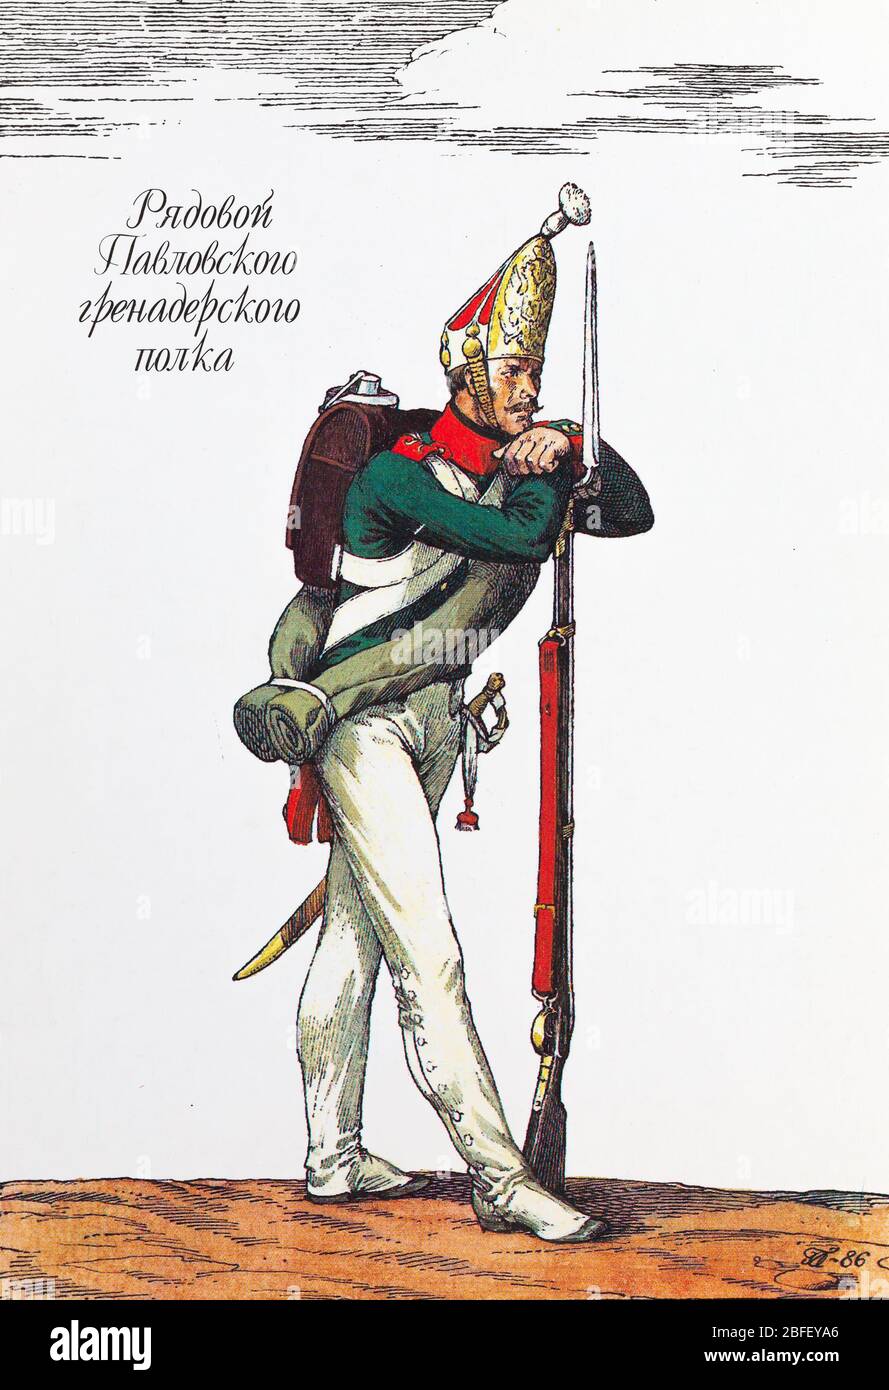 Rifleman du Pavlovsky grenadier Regiment, 1812, uniforme de l'armée russe du XIXe siècle, Russie Banque D'Images